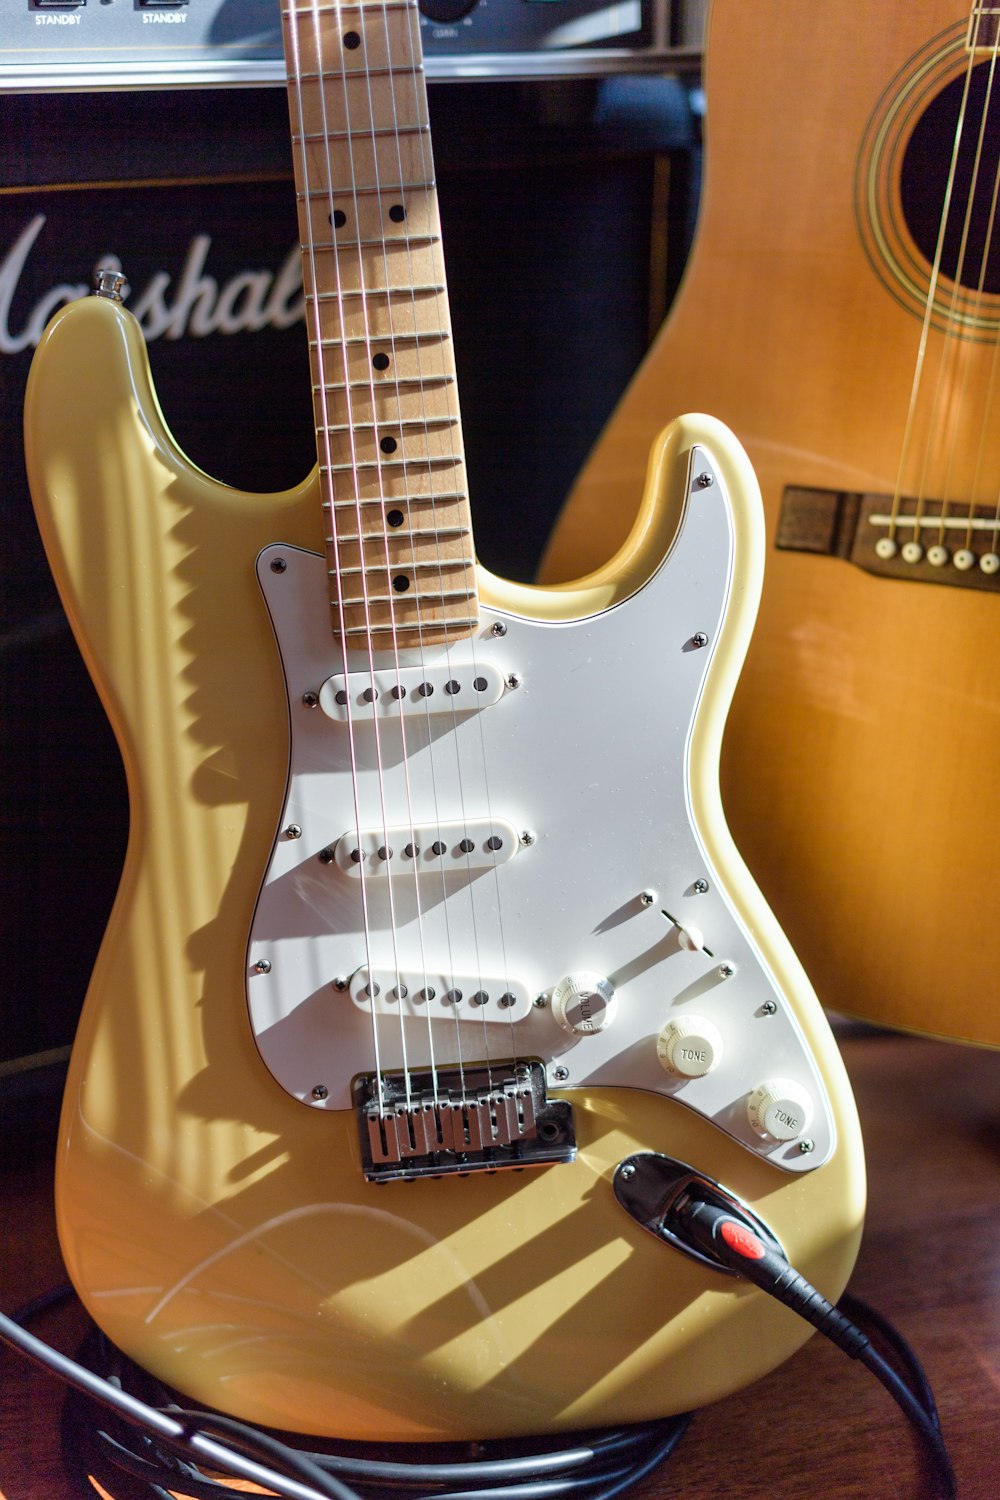 chitarra elettrica marrone e bianca